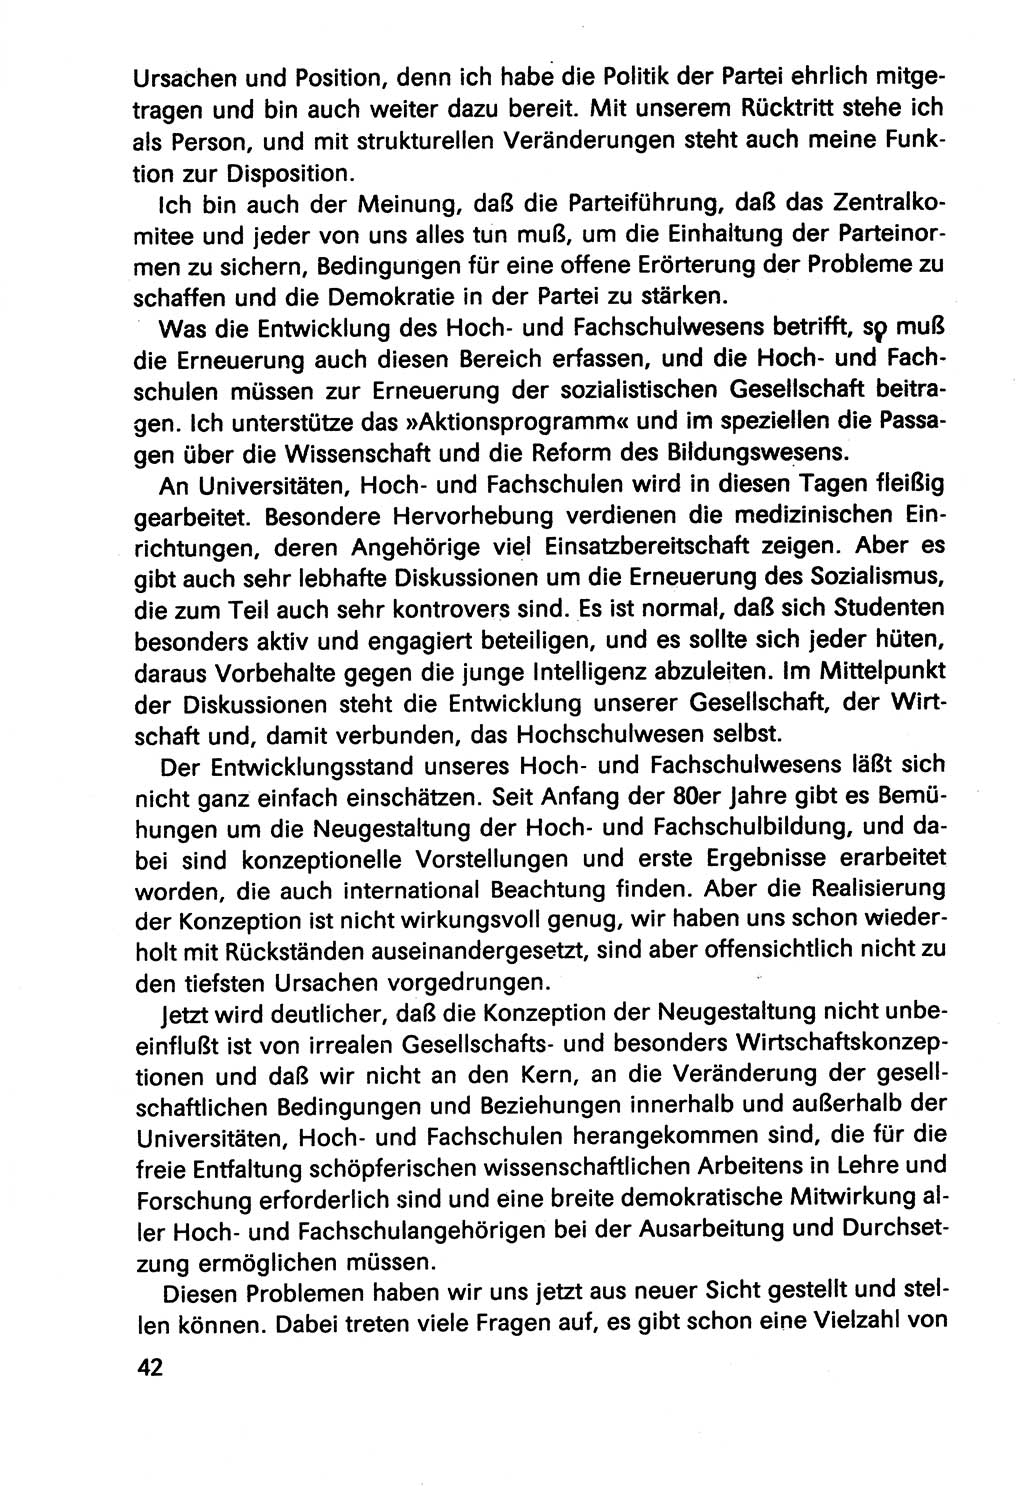 Diskussionsbeiträge, 10. Tagung des ZK (Zentralkomitee) der SED (Sozialistische Einheitspartei Deutschlands) [Deutsche Demokratische Republik (DDR)] 1989, Seite 42 (Disk.-Beitr. 10. Tg. ZK SED DDR 1989, S. 42)